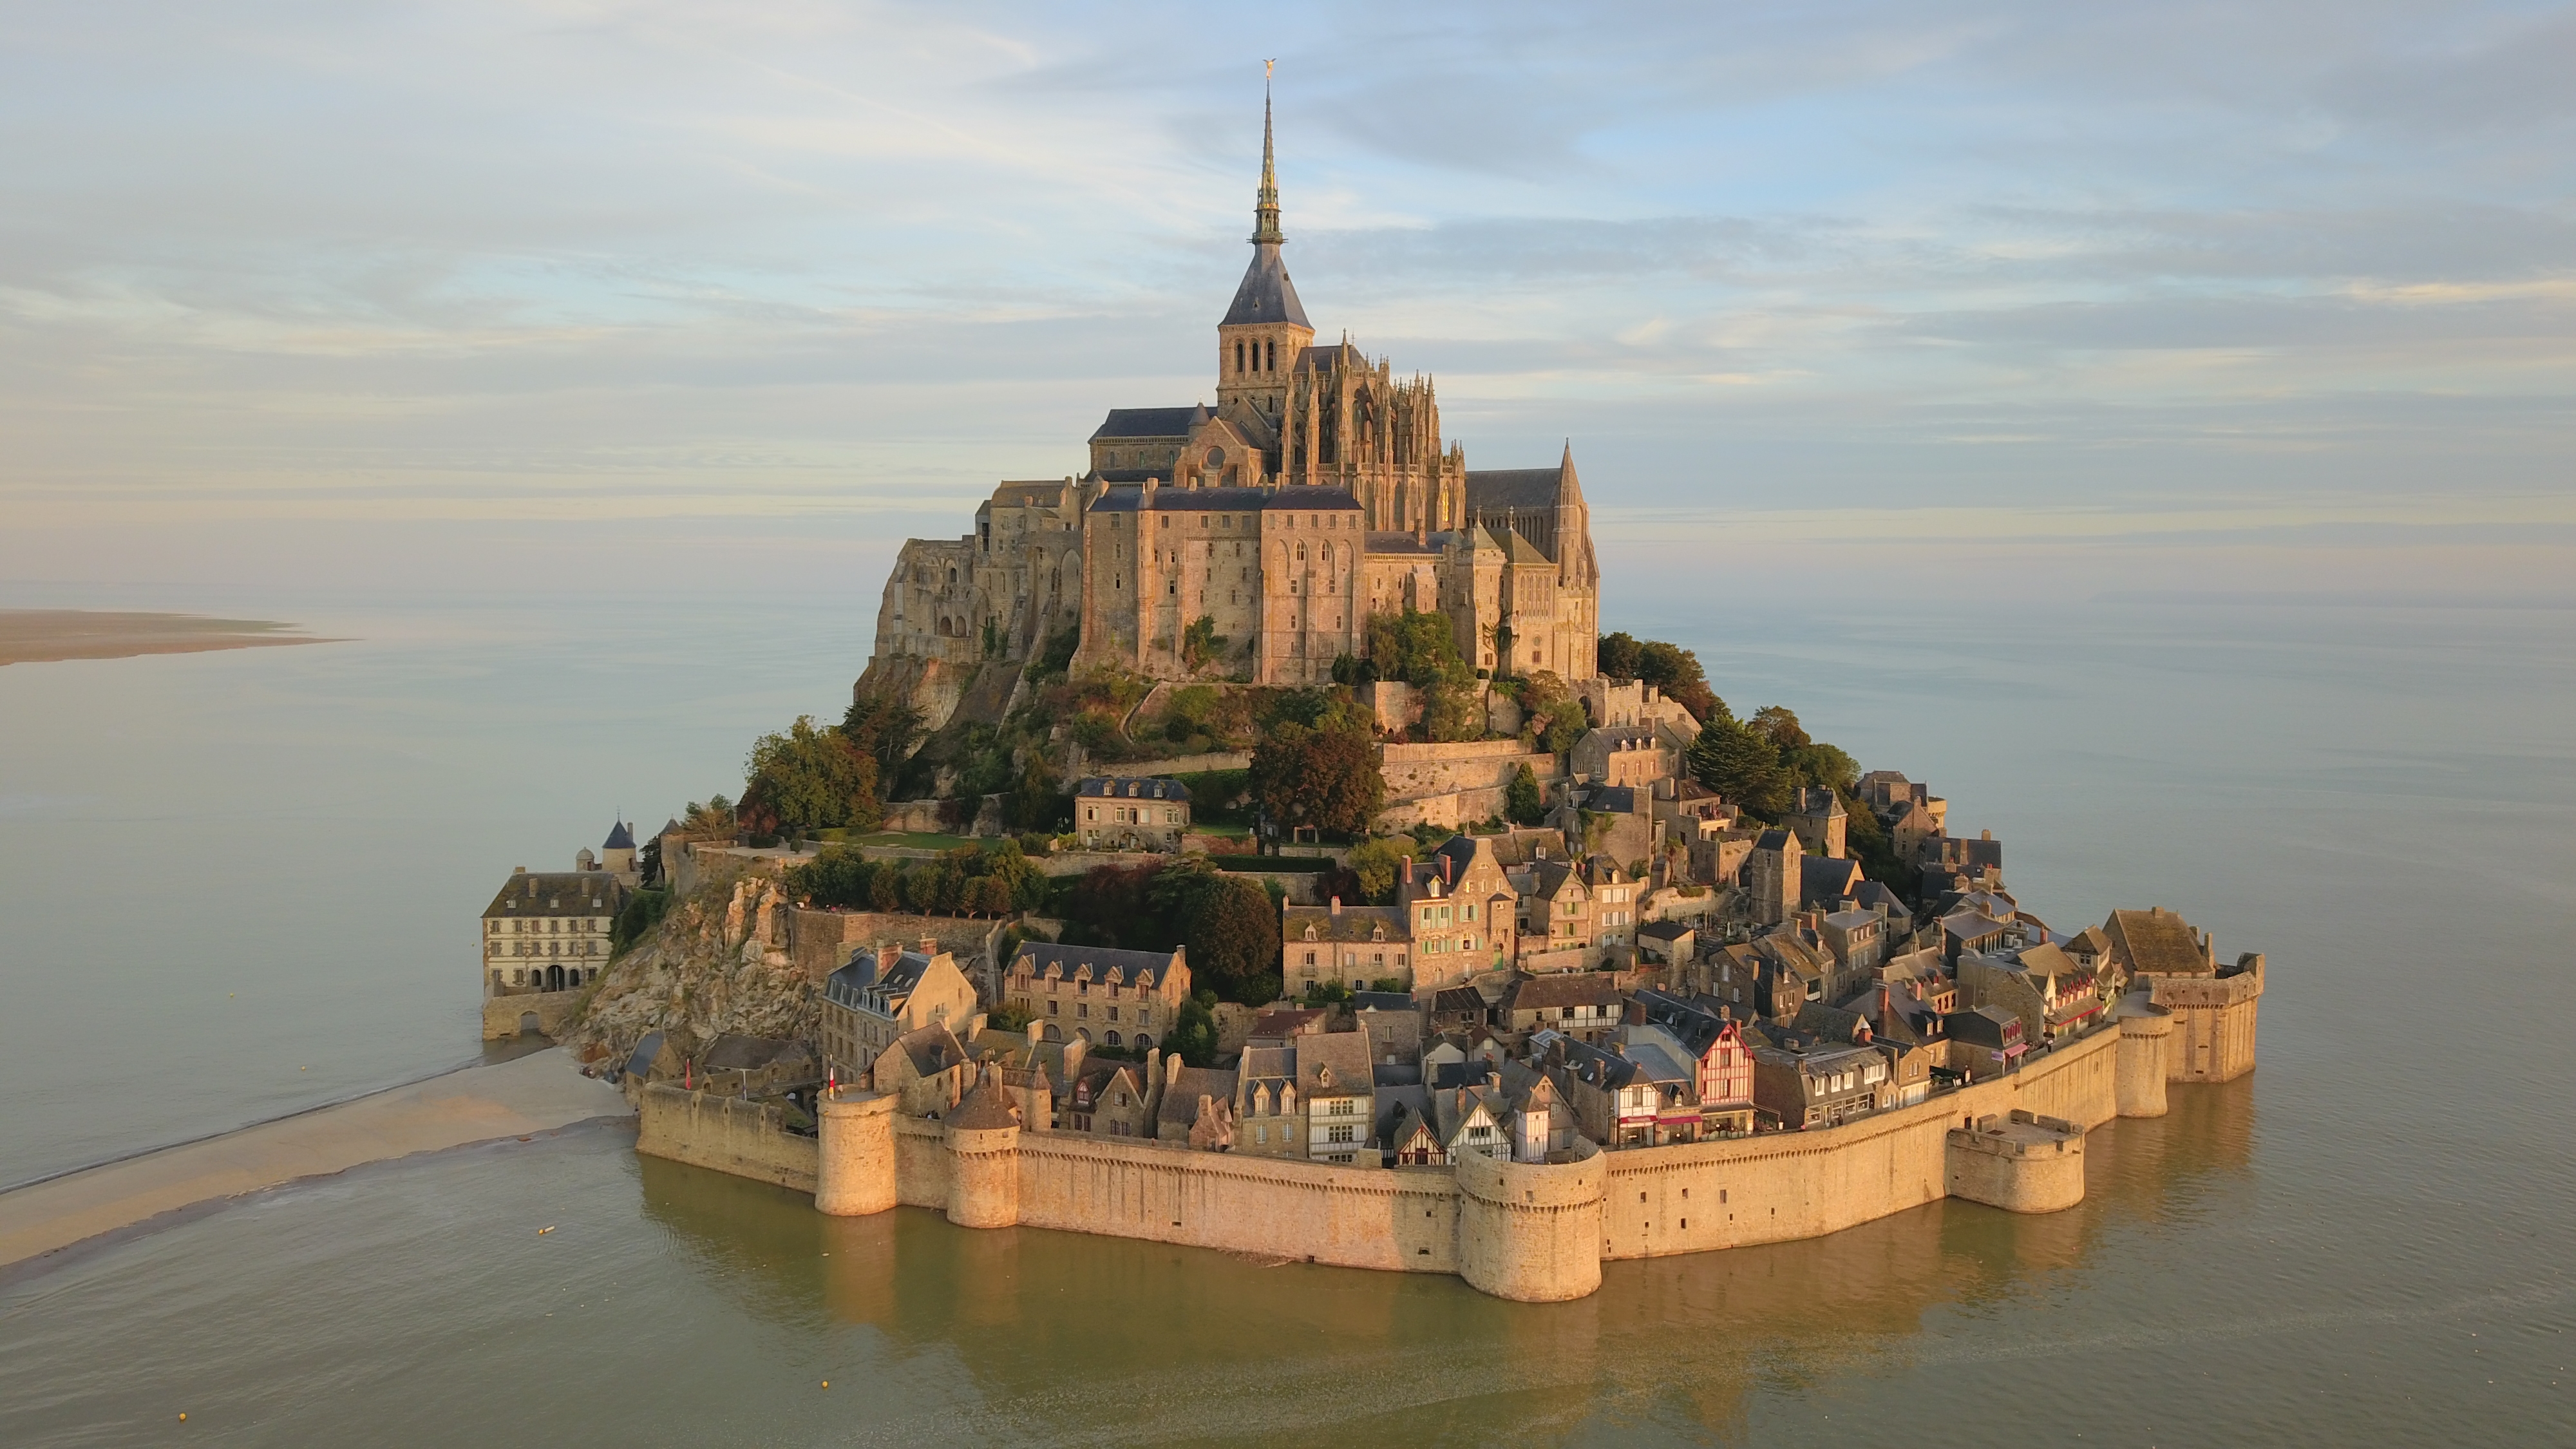 Lieu sacré Mont Saint Michel (Photo: Arnaustan - Creative Commons)